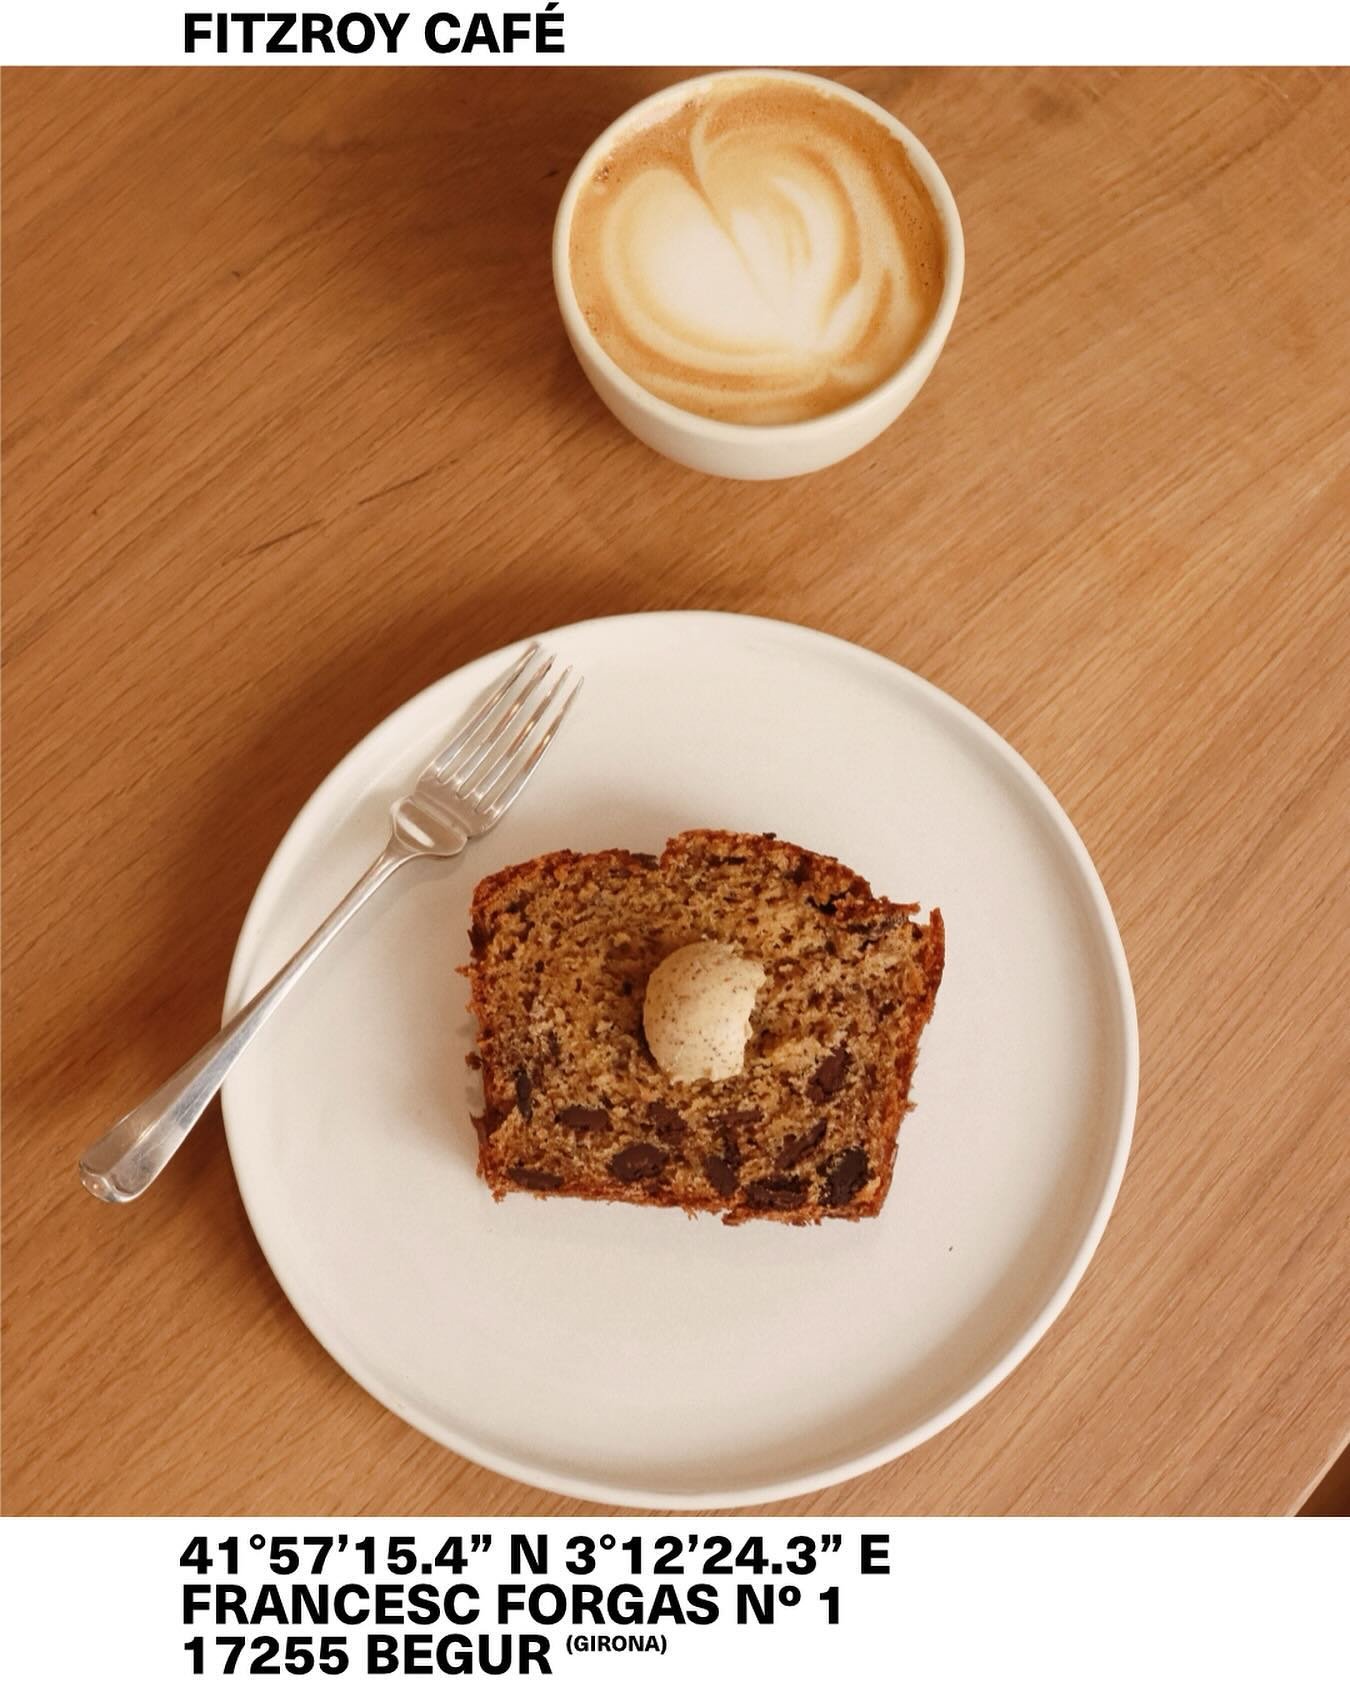 El moment que tant esperàvem ha arribat: Fitzroy Café està de tornada! Prepara't per gaudir del nostre cafè d'especialitat, deliciosos pancakes de plàtan i opcions delicioses per esmorzar. 